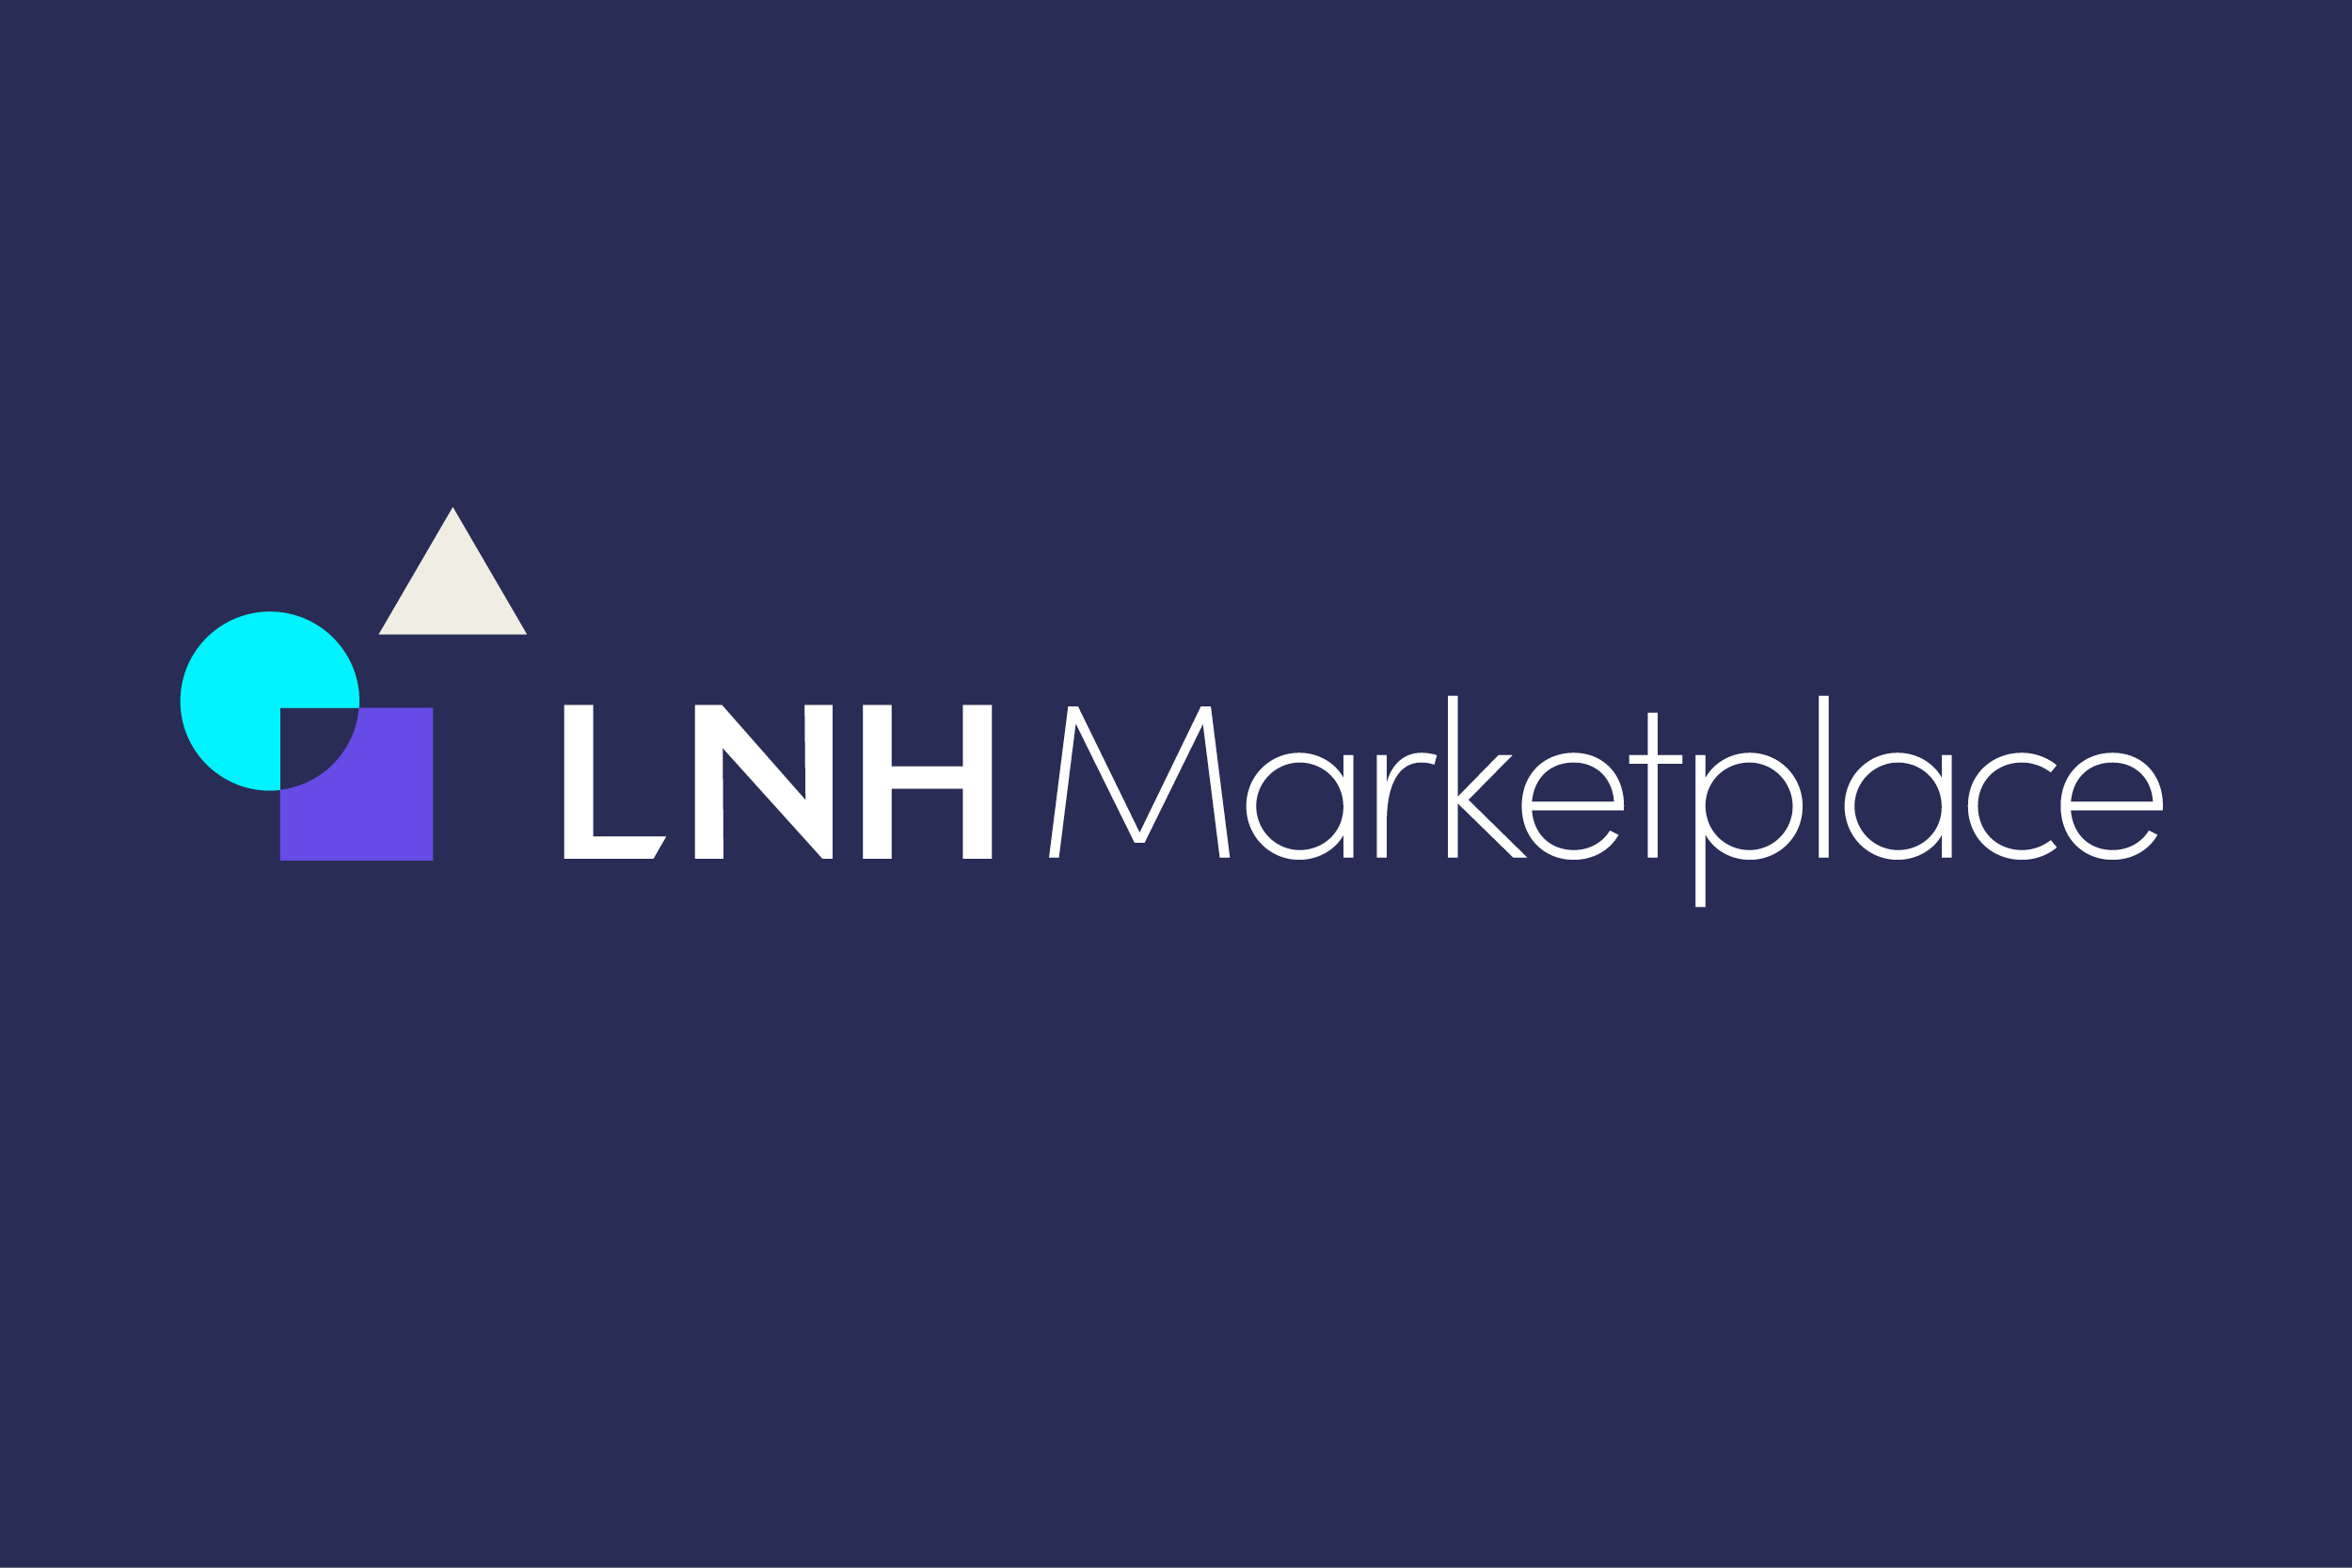 LNH Marketplace Partnership